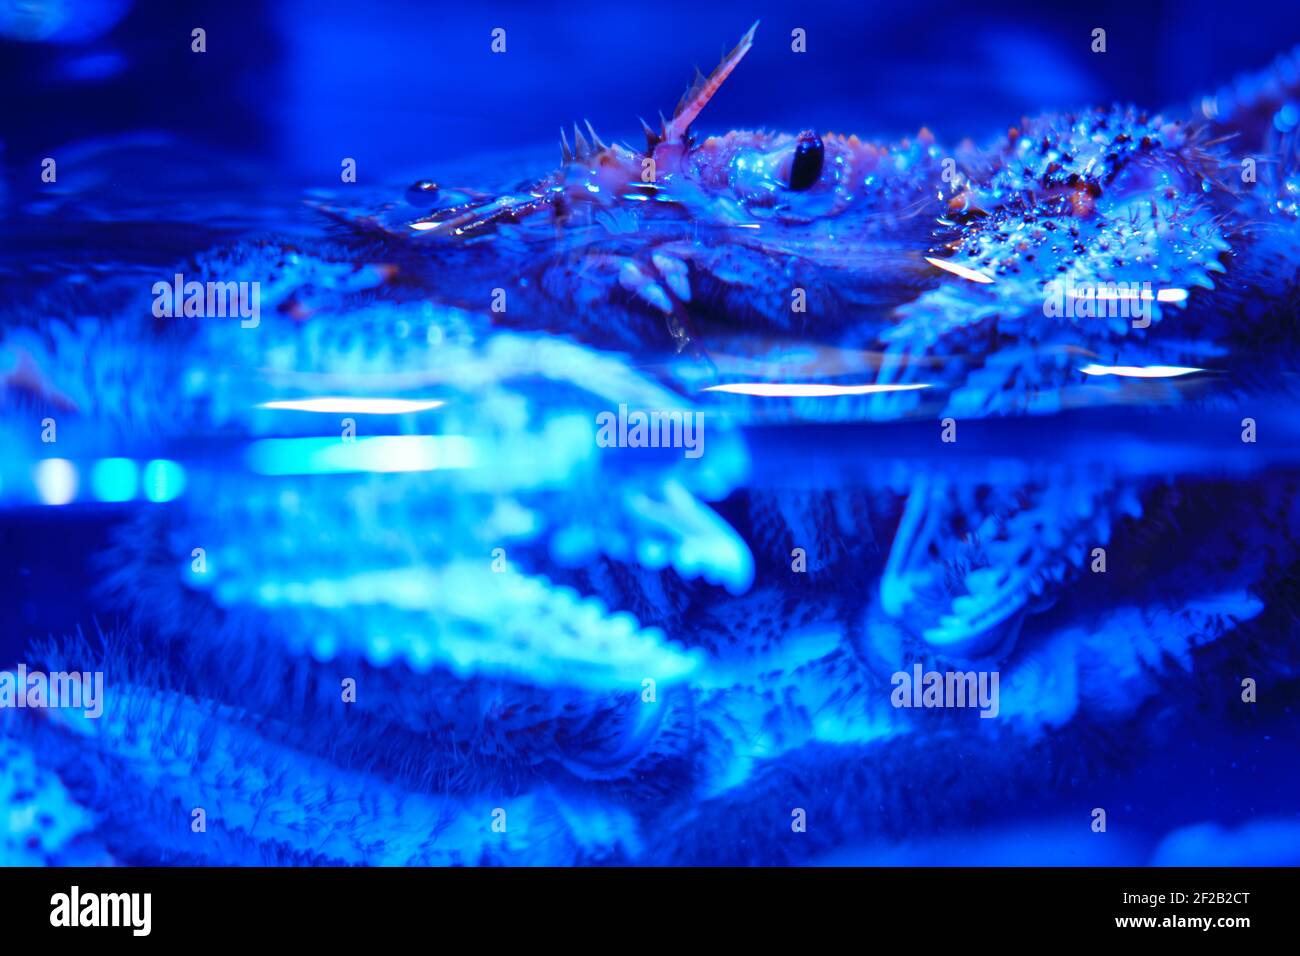 Die viereckige Haarkrabbe ist eine Krabbenart, die im Fernen Osten und Japan gefunden wird. Erimacrus isenbeckii - kommerzielle Art von japanischen und russischen Meer c Stockfoto